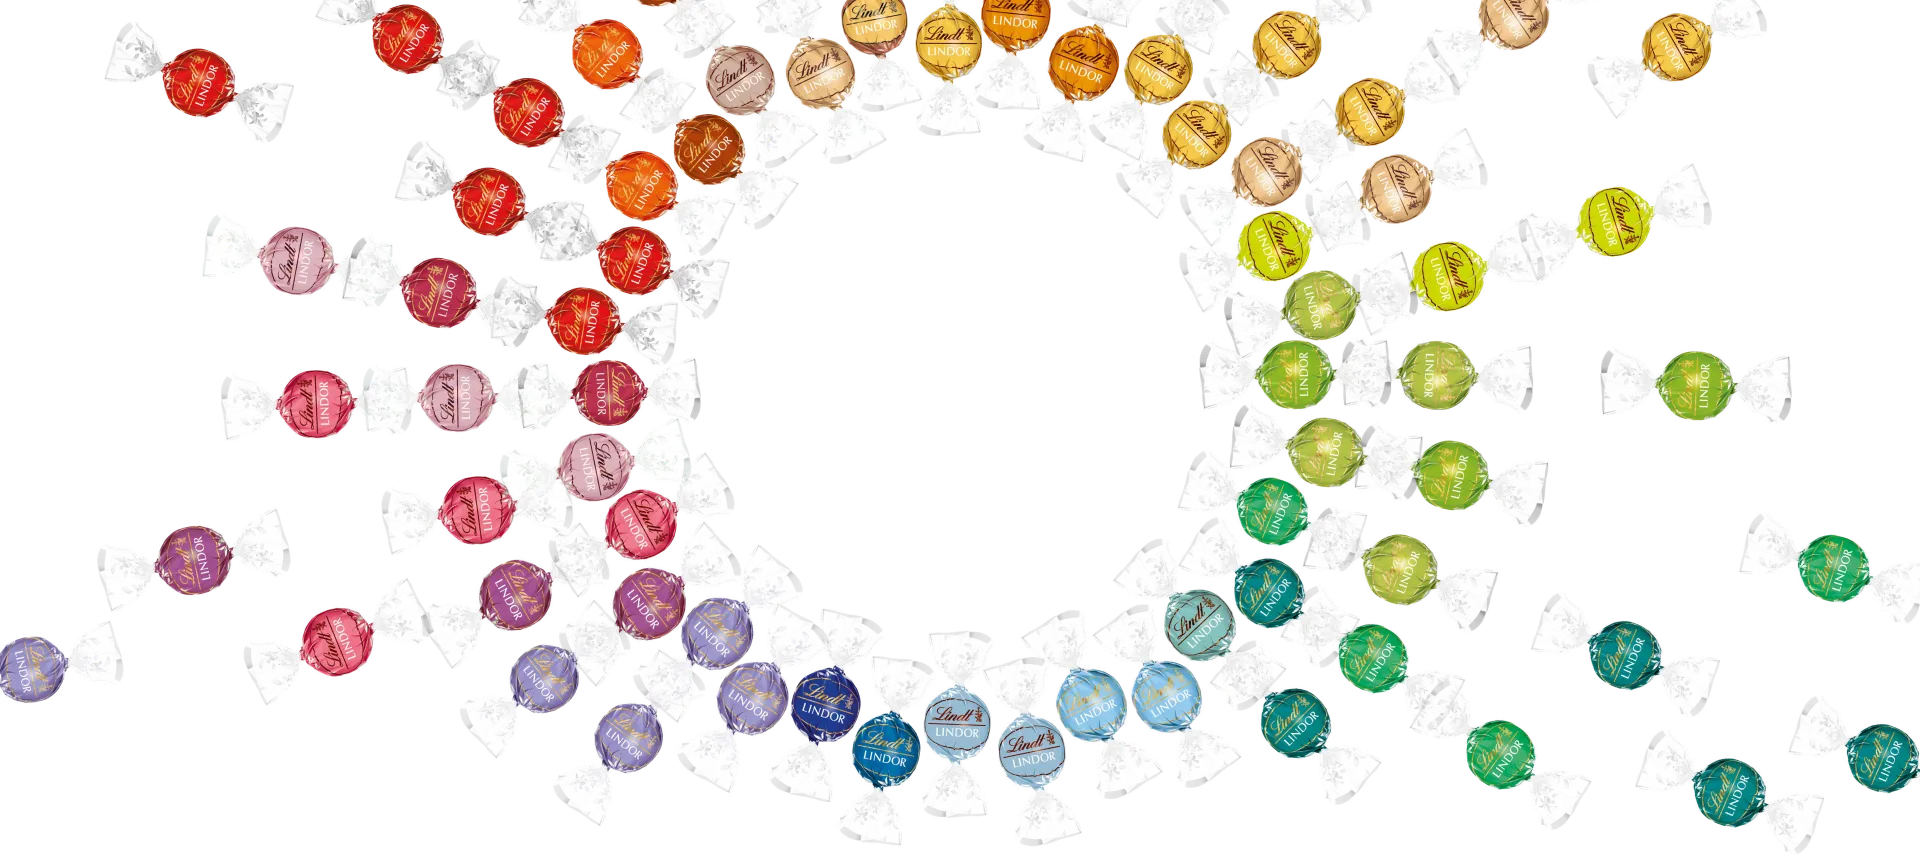 Viele LINDOR-Kugeln in diversen Geschmacksrichtungen farblich in Kreise angeordnet (Foto)